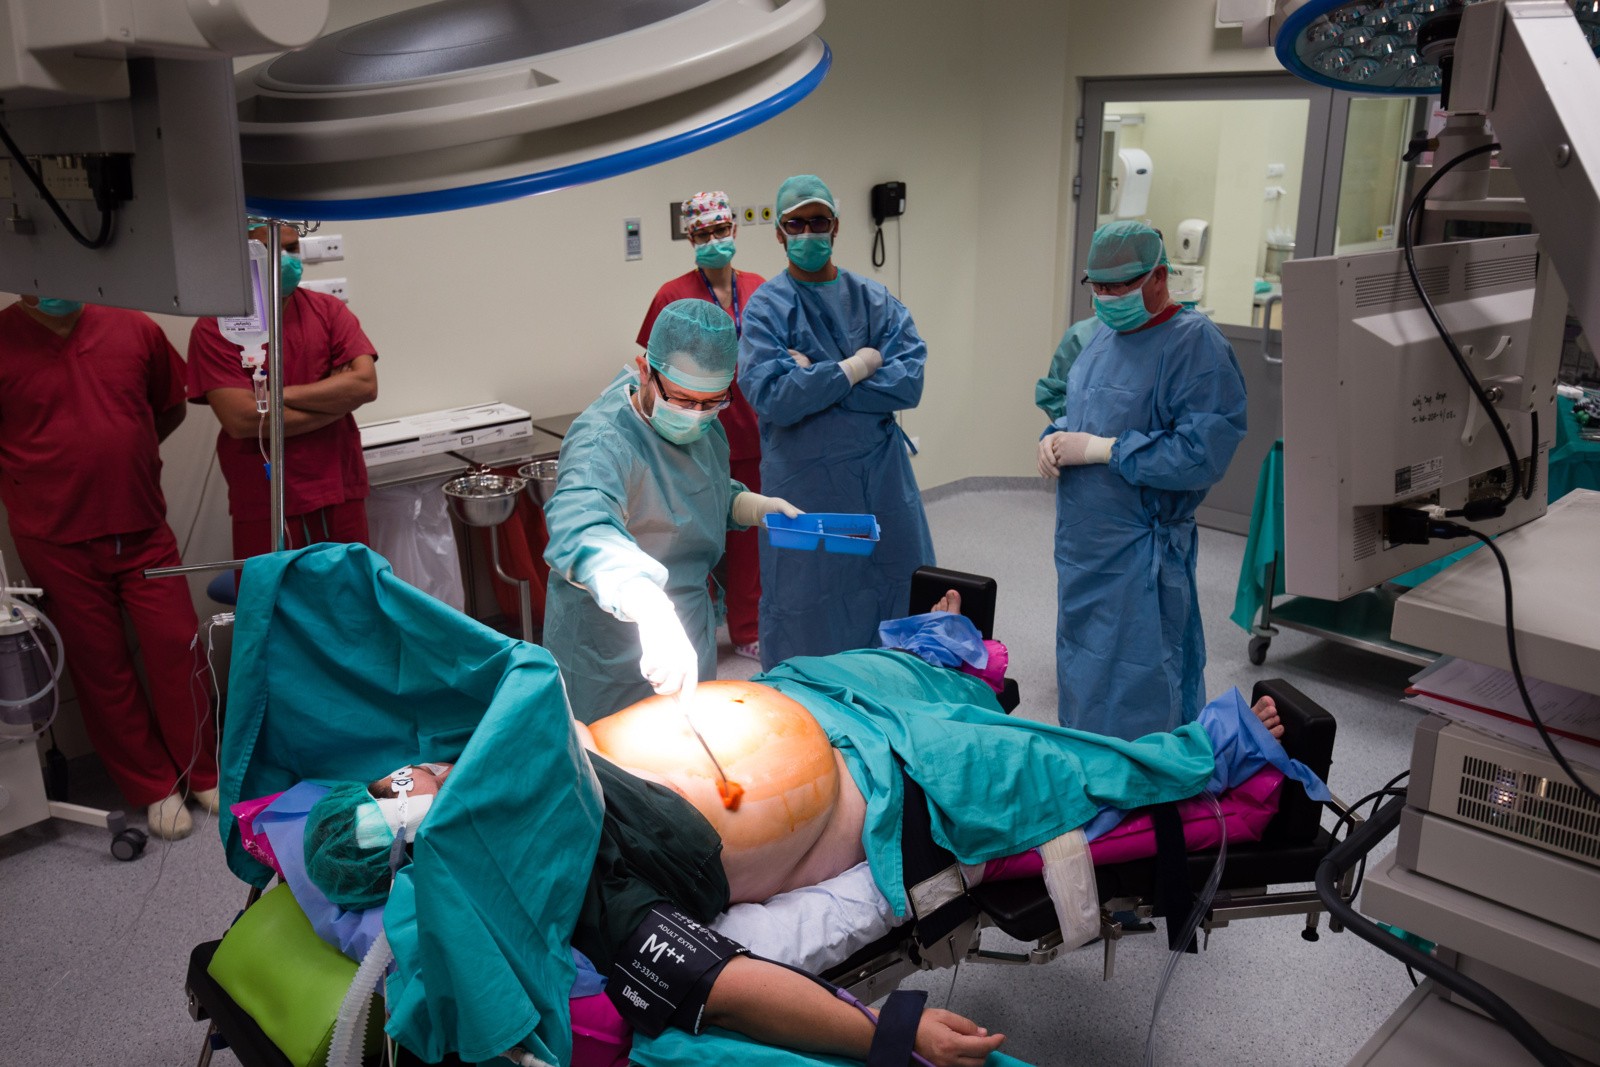 Operacja Bariatryczna Zmniejszenia żołądka W Szpitalu Wojewódzkim W Białymstoku Zdjęcia 6186